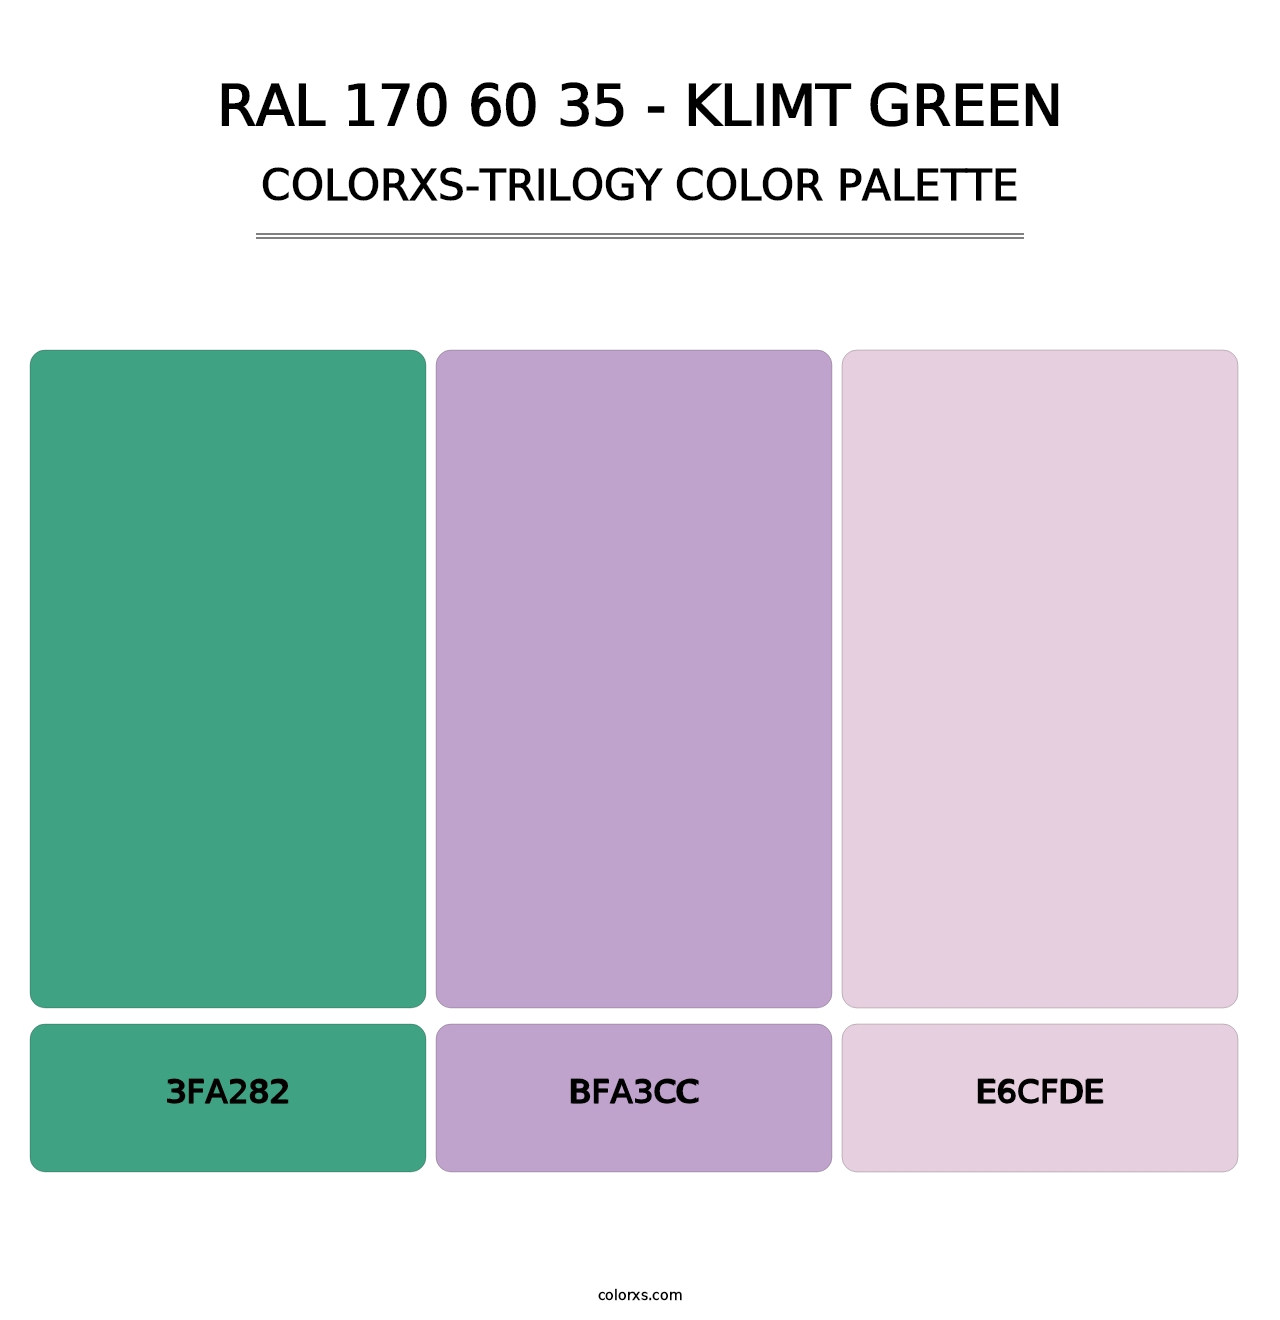 RAL 170 60 35 - Klimt Green - Colorxs Trilogy Palette